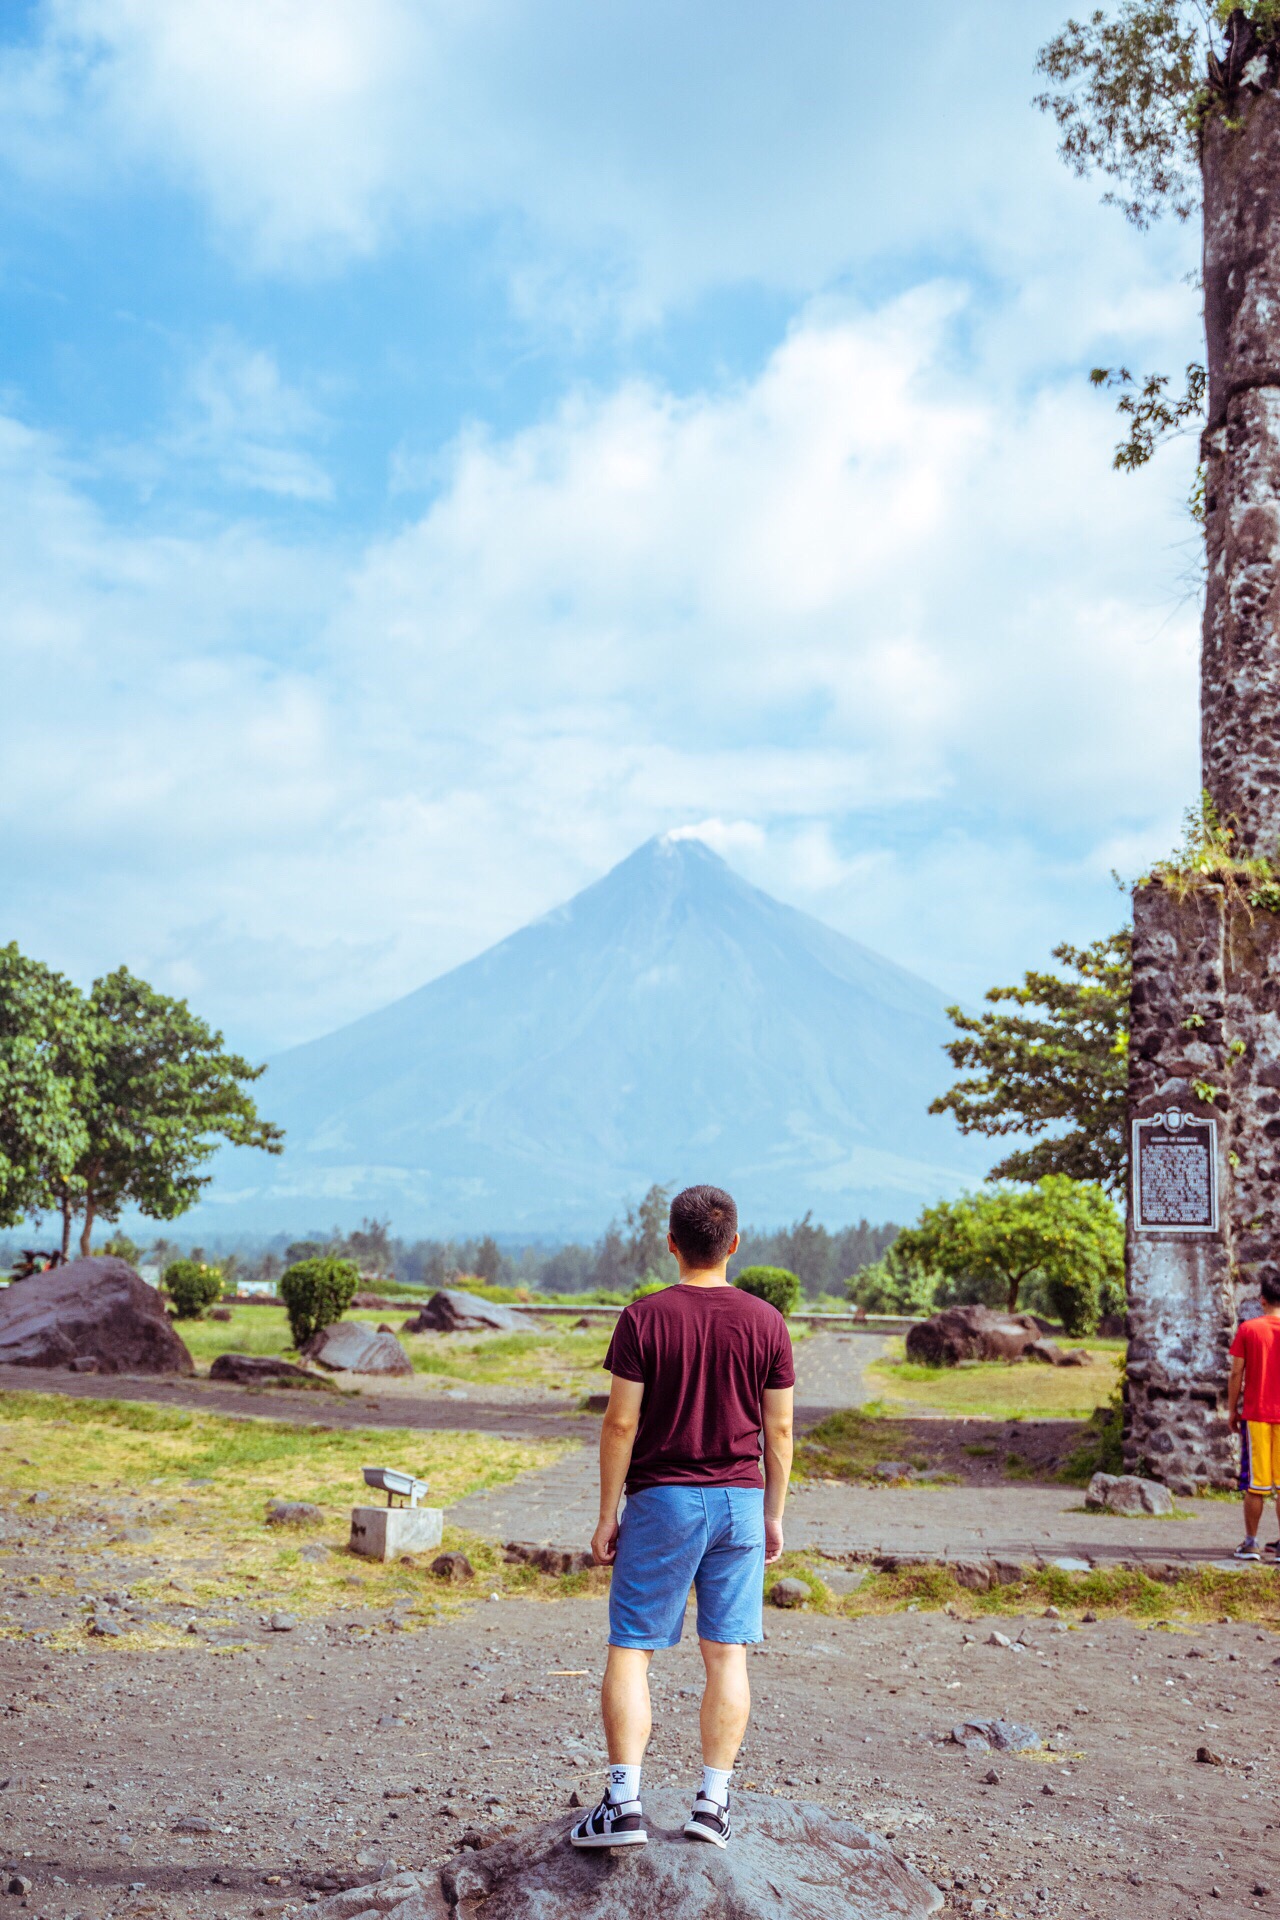 去菲律宾看火山，遗迹和冒着烟的火山更配哦！  很幸运第一天我们就在Cagsawa Ruins看到了完